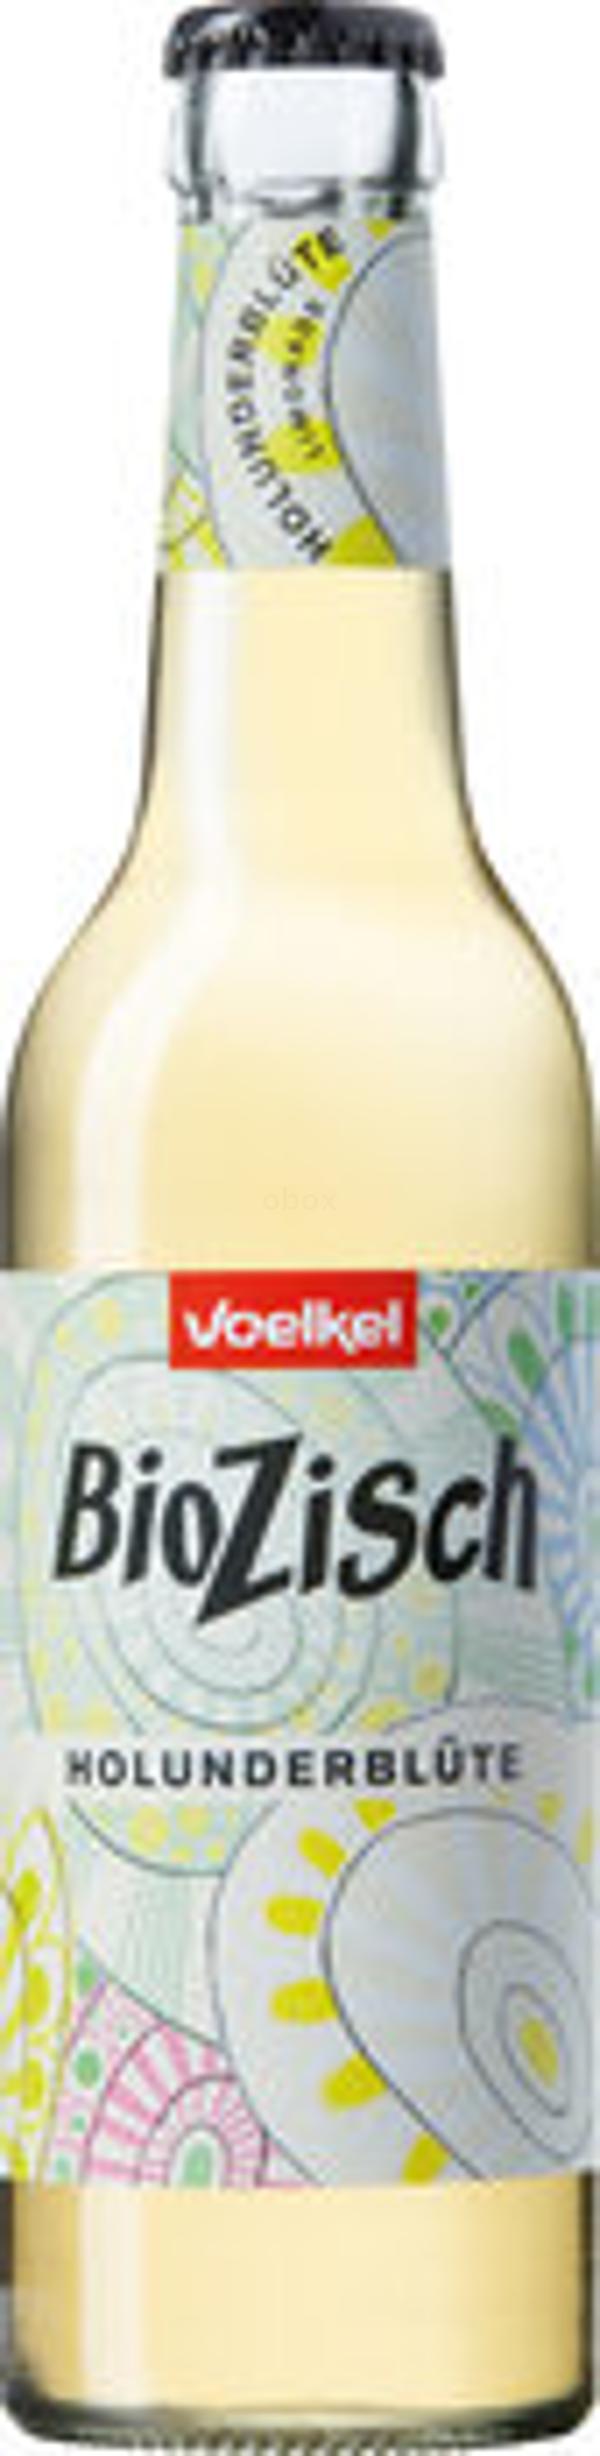 Produktfoto zu Bio Zisch Holunderblüte [0,33l]